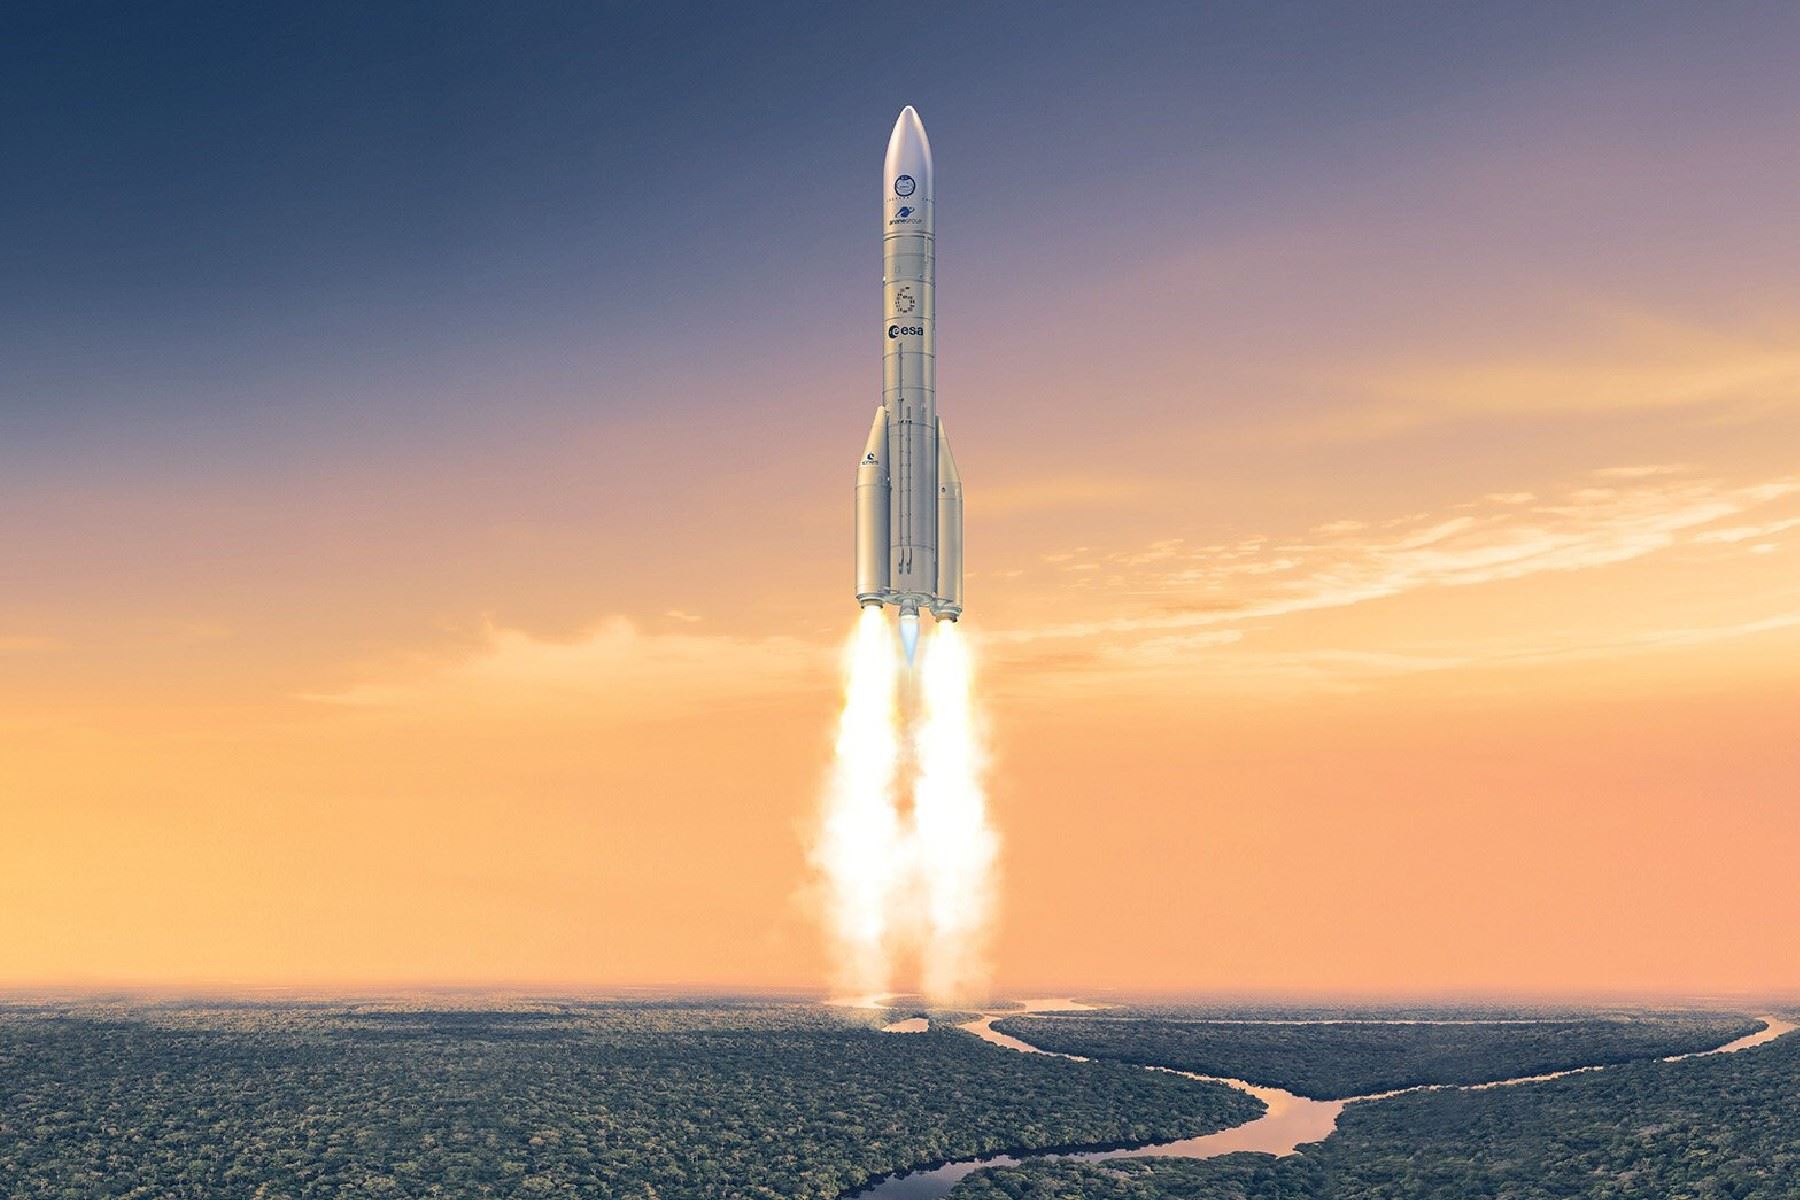 La Agencia Espacial Europea concretó el lanzamiento de Ariane 6, lo que marca  un hito en su tecnología aeroespacial.